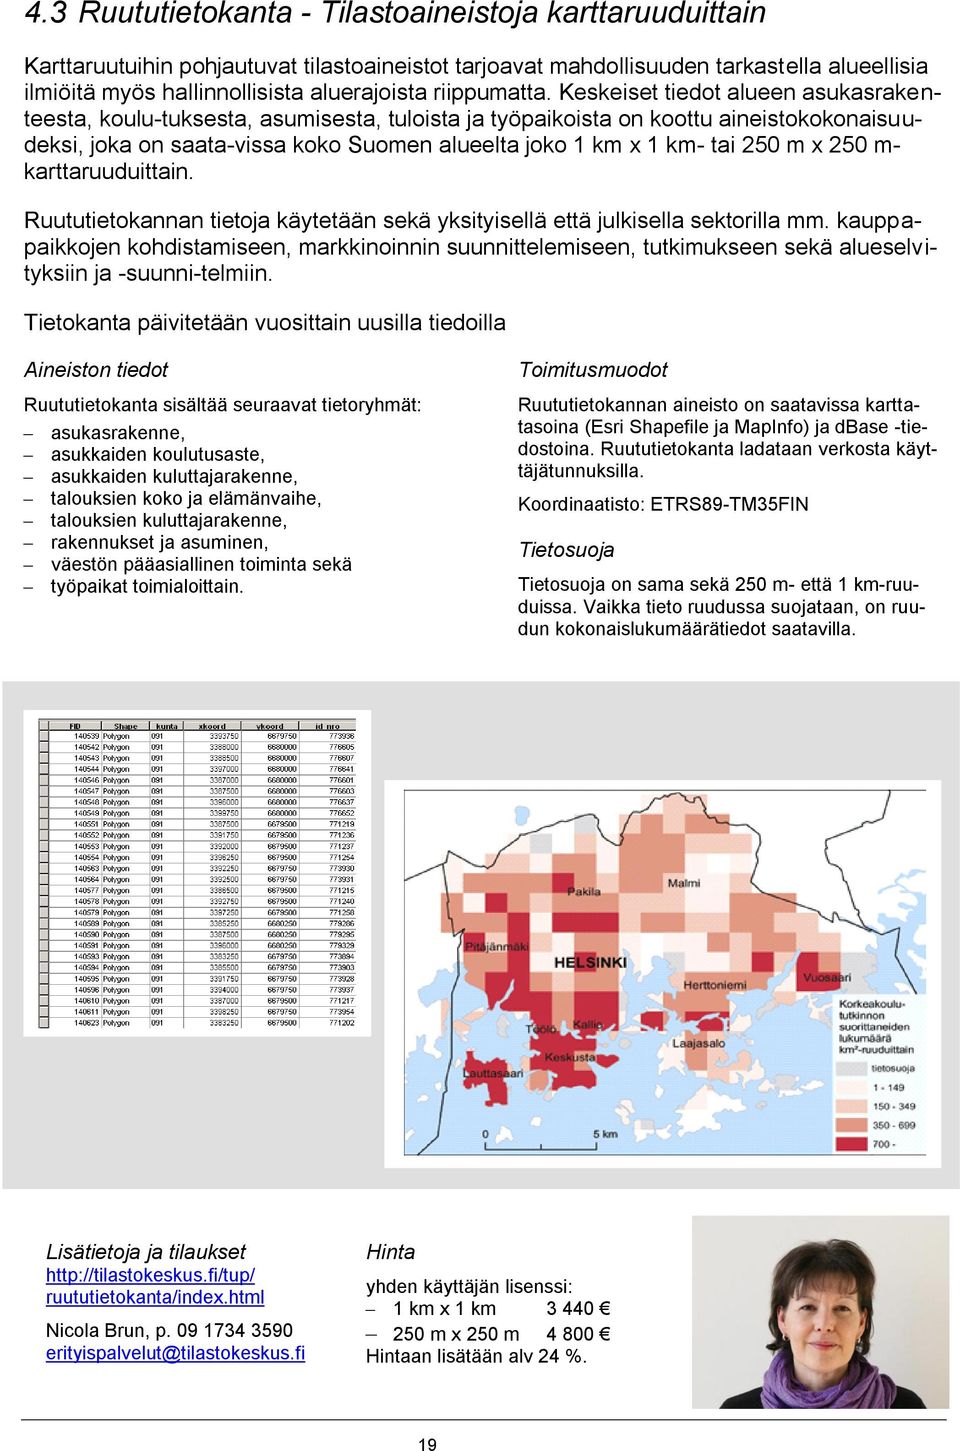 Keskeiset tiedot alueen asukasrakenteesta, koulu-tuksesta, asumisesta, tuloista ja työpaikoista on koottu aineistokokonaisuudeksi, joka on saata-vissa koko Suomen alueelta joko 1 km x 1 km- tai 250 m